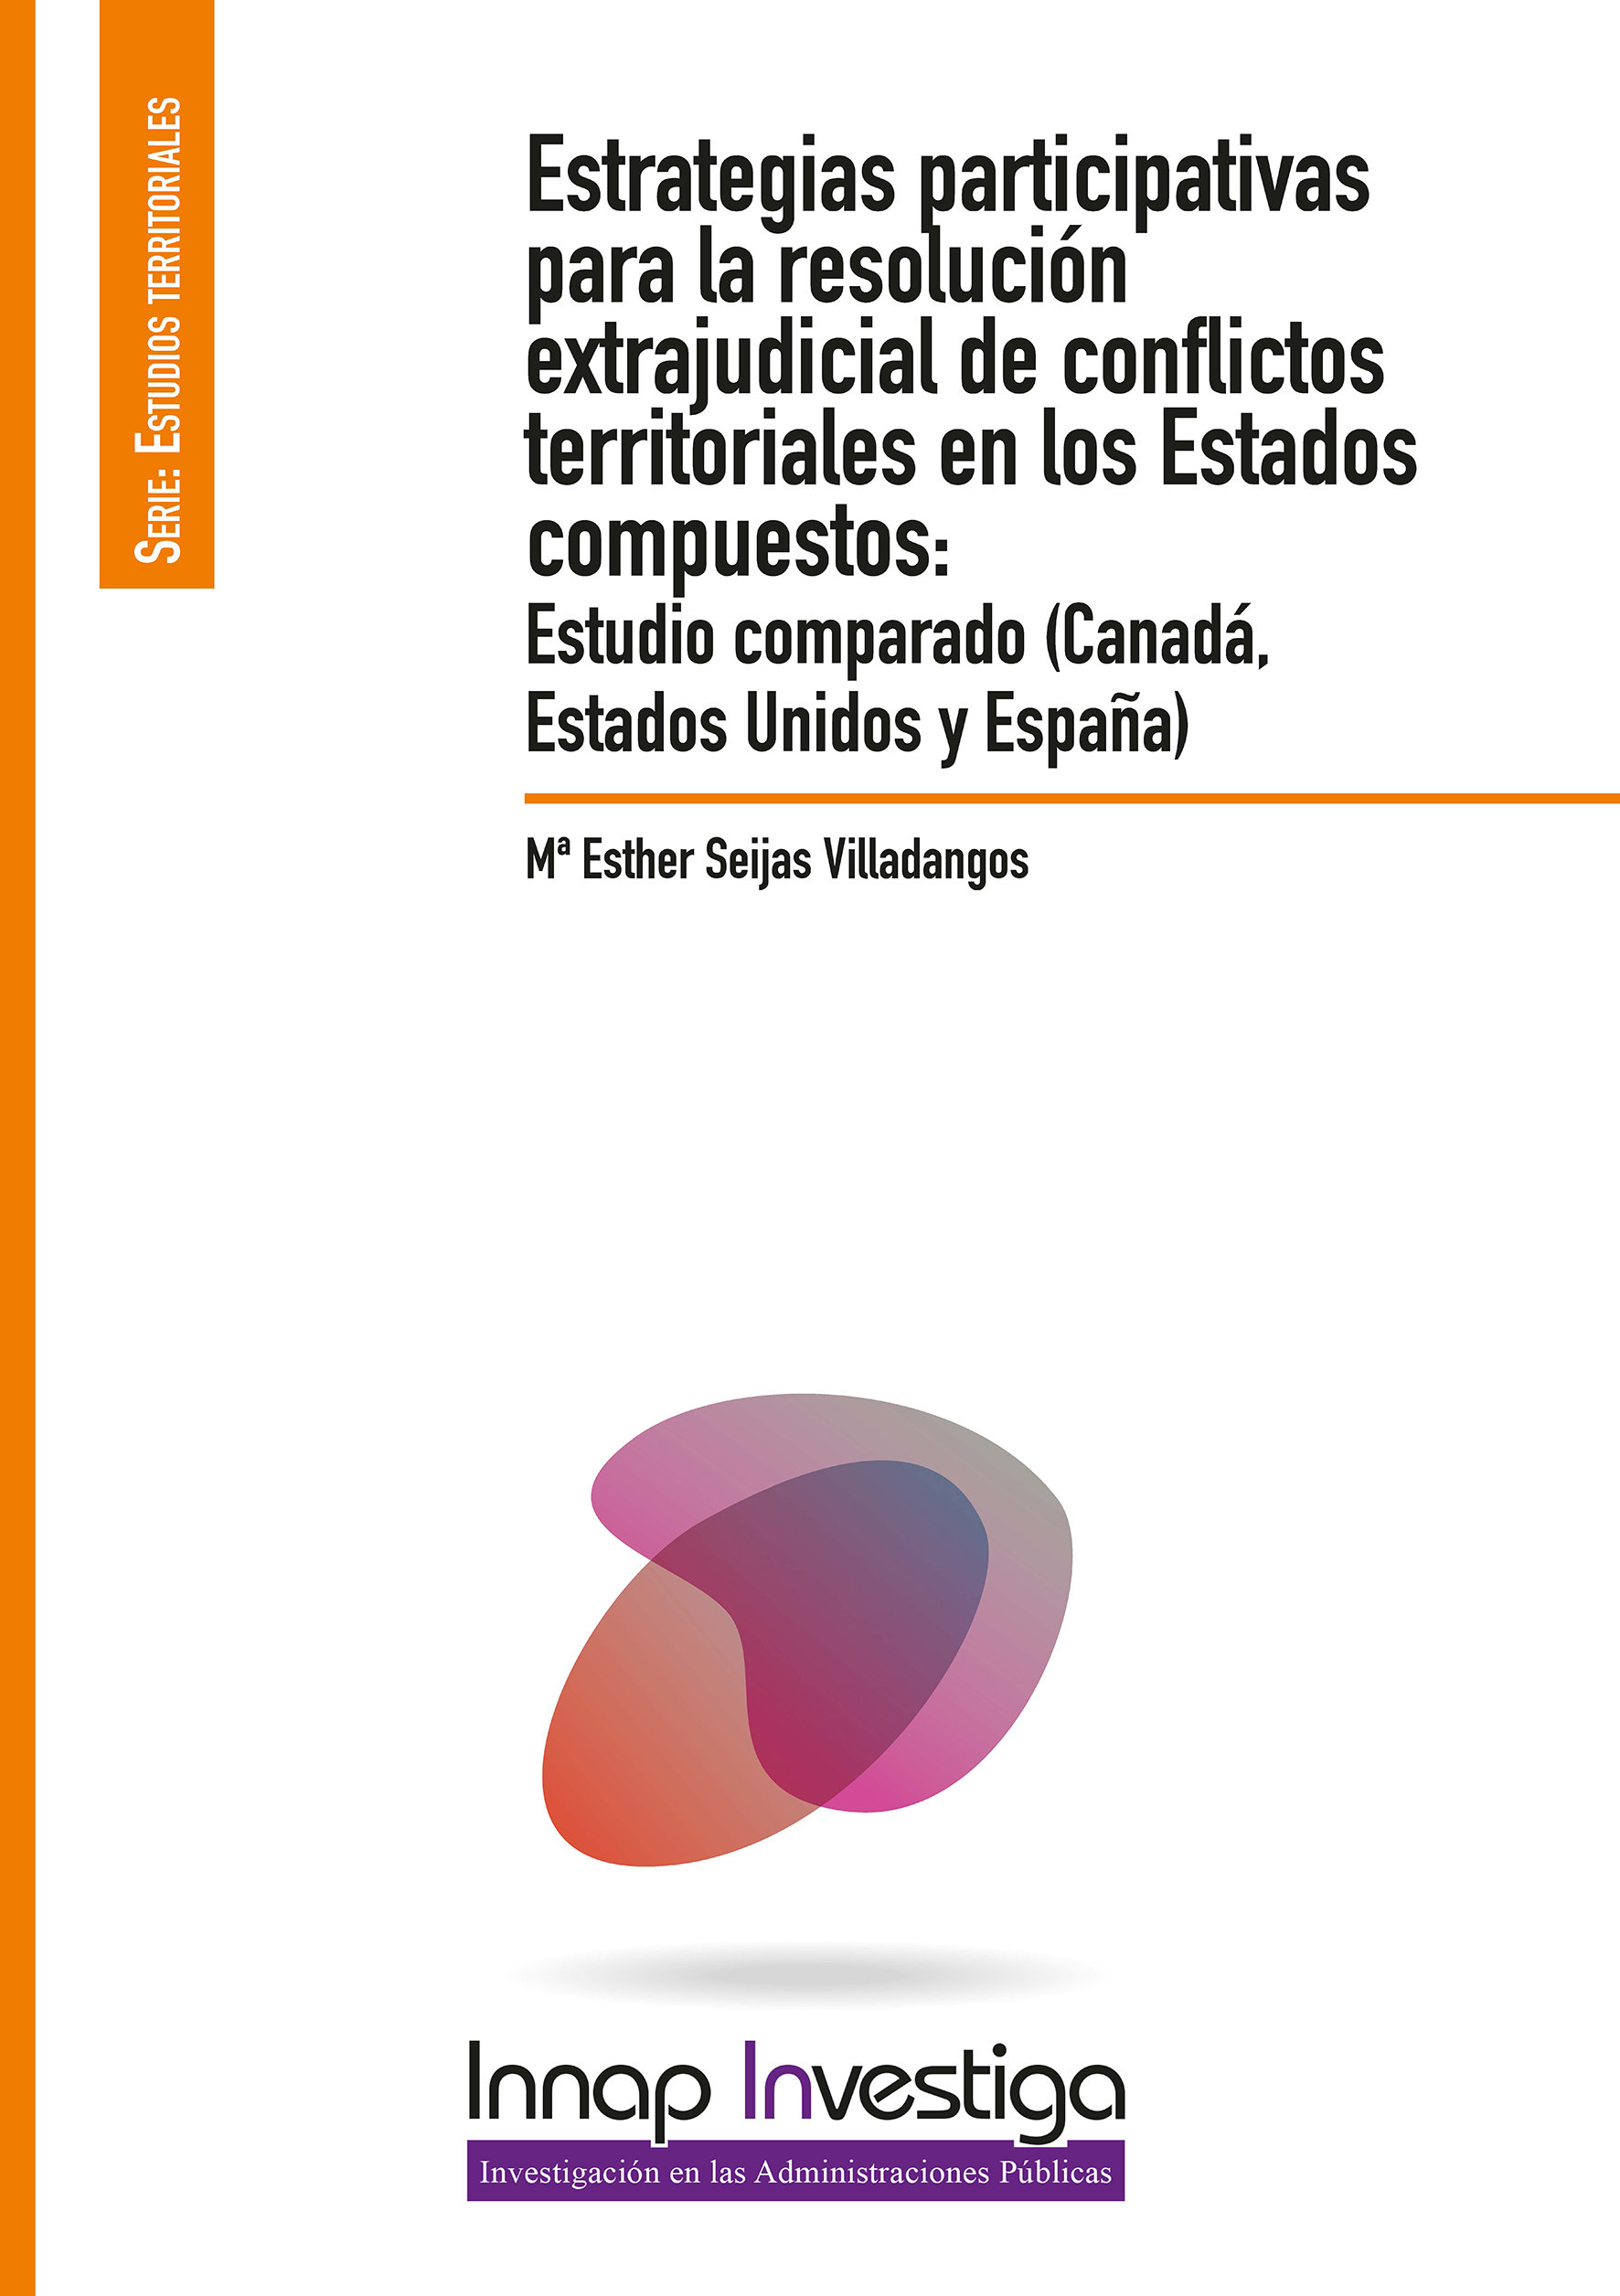 Estrategias participativas para la resolución extrajudicial de conflictos territoriales en los Estados compuestos: Estudio comparado (Canadá, Estados Unidos y España)